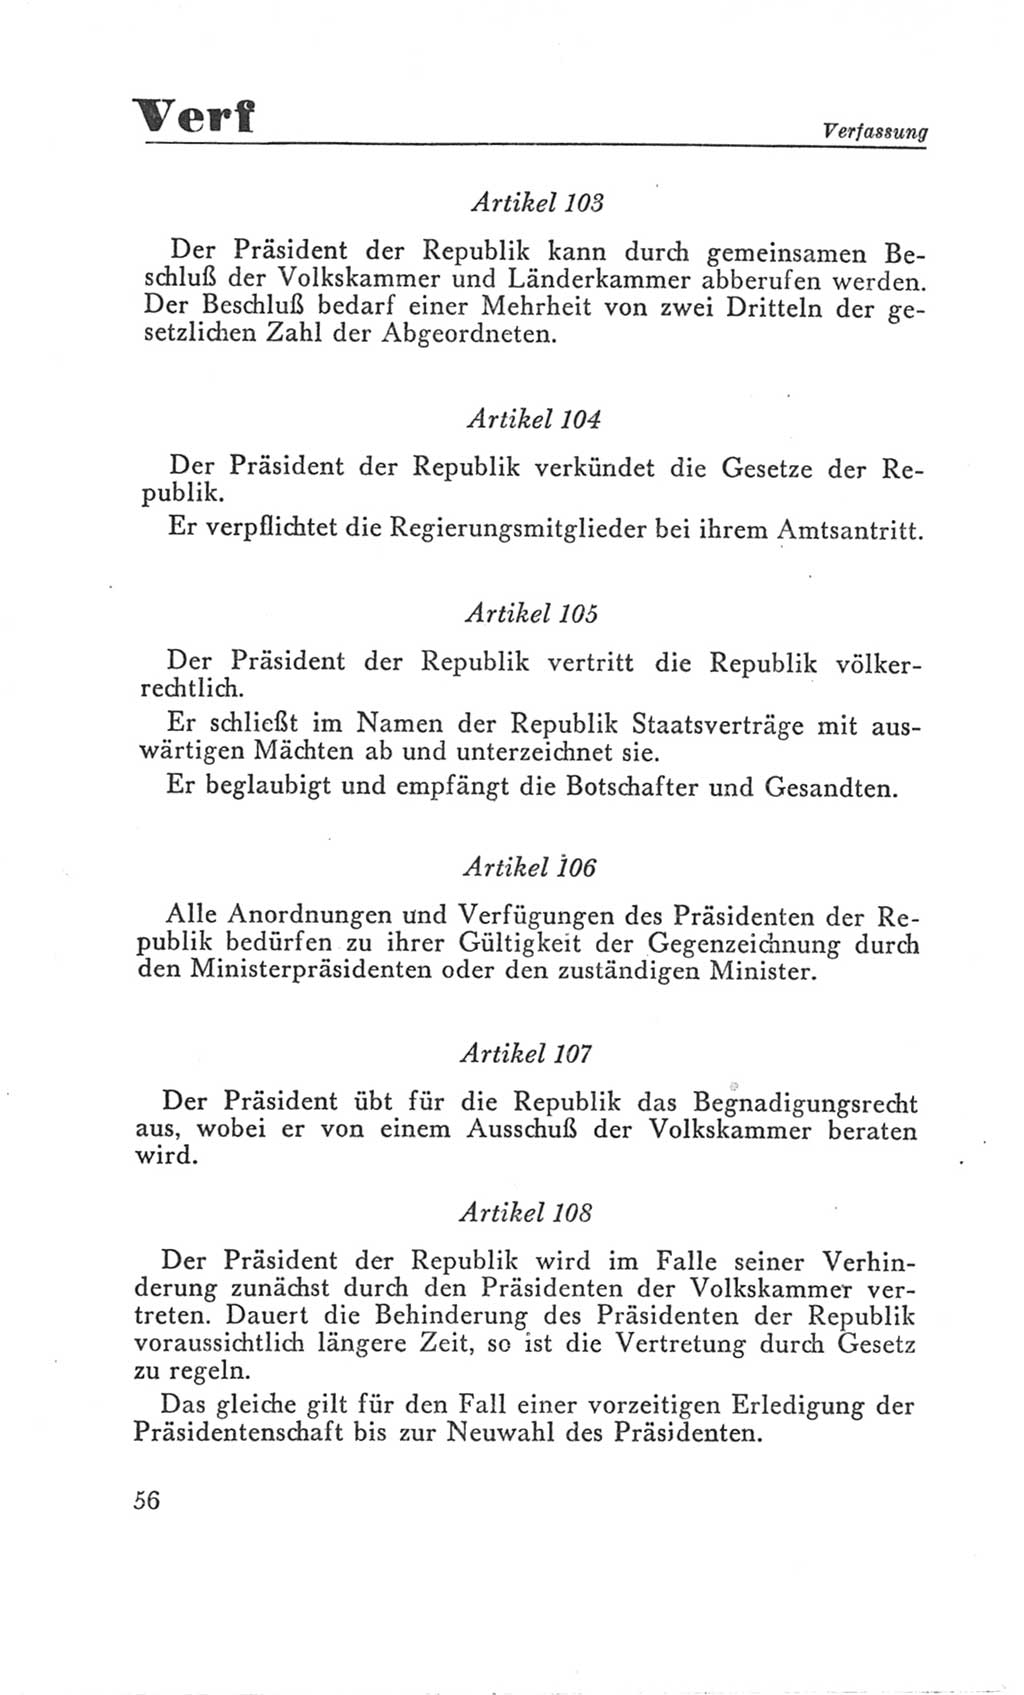 Handbuch der Volkskammer (VK) der Deutschen Demokratischen Republik (DDR), 3. Wahlperiode 1958-1963, Seite 56 (Hdb. VK. DDR 3. WP. 1958-1963, S. 56)